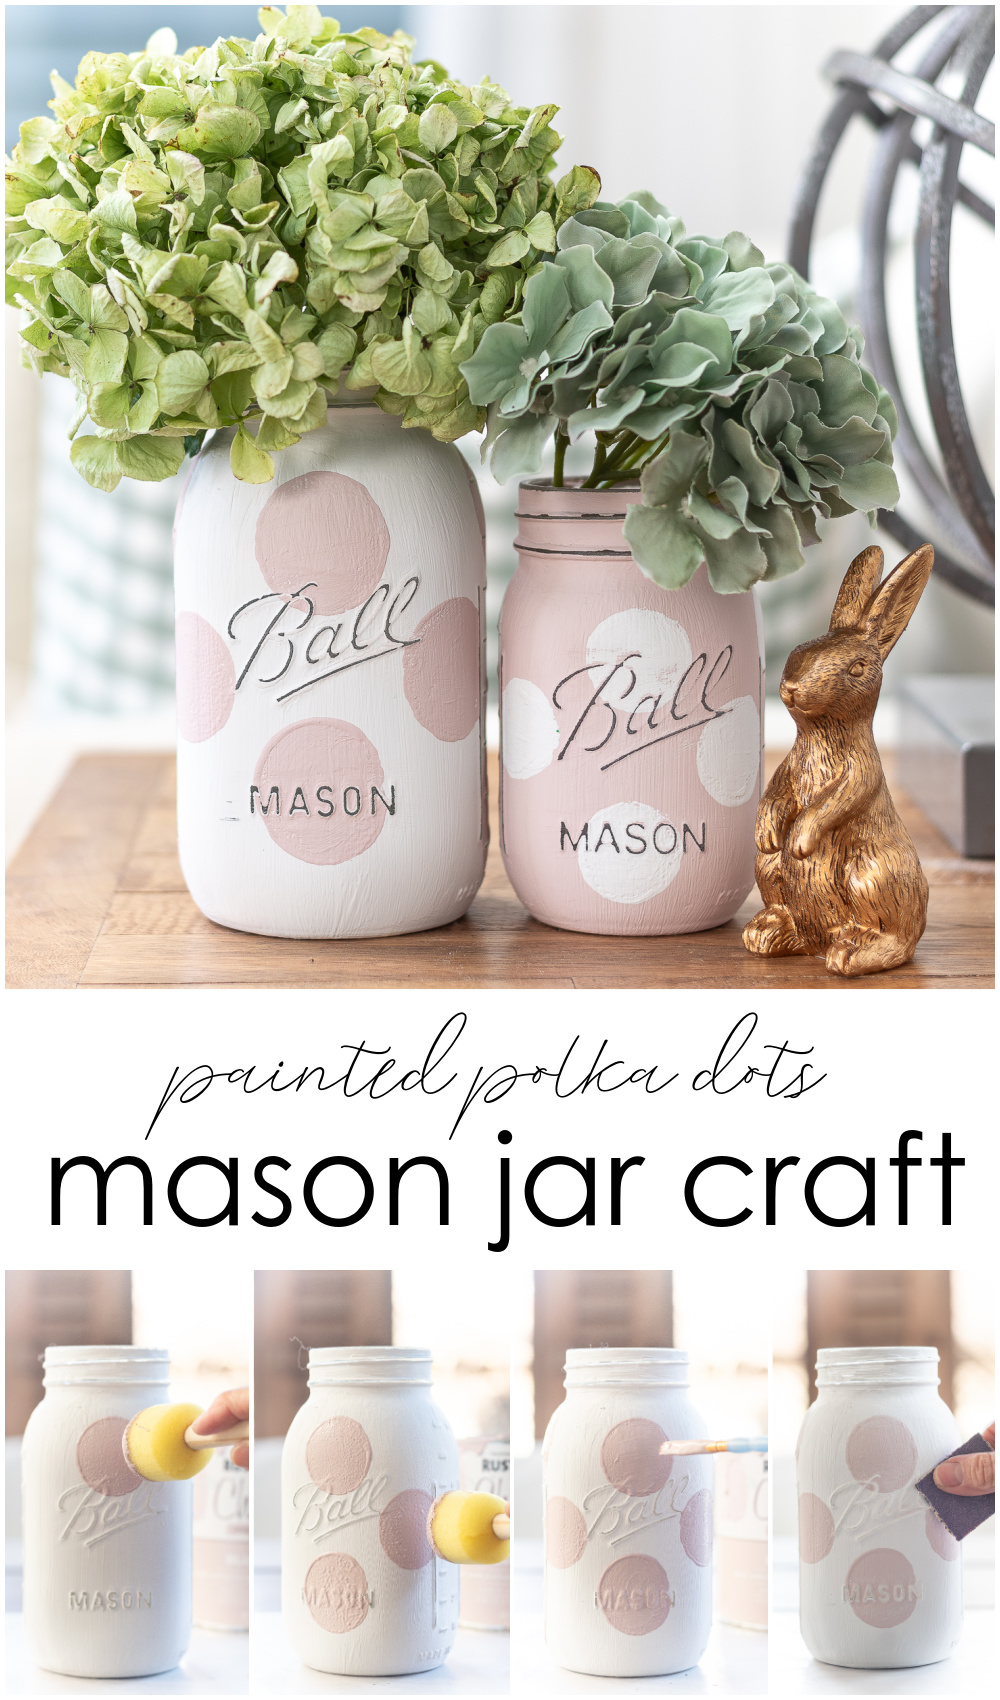 Polka Dot Mason Jars - Kate Spade Polka Dots on Mason Jars - How to Make Polka Dot Mason Jars - Painted Mason Jars with Polka Dots